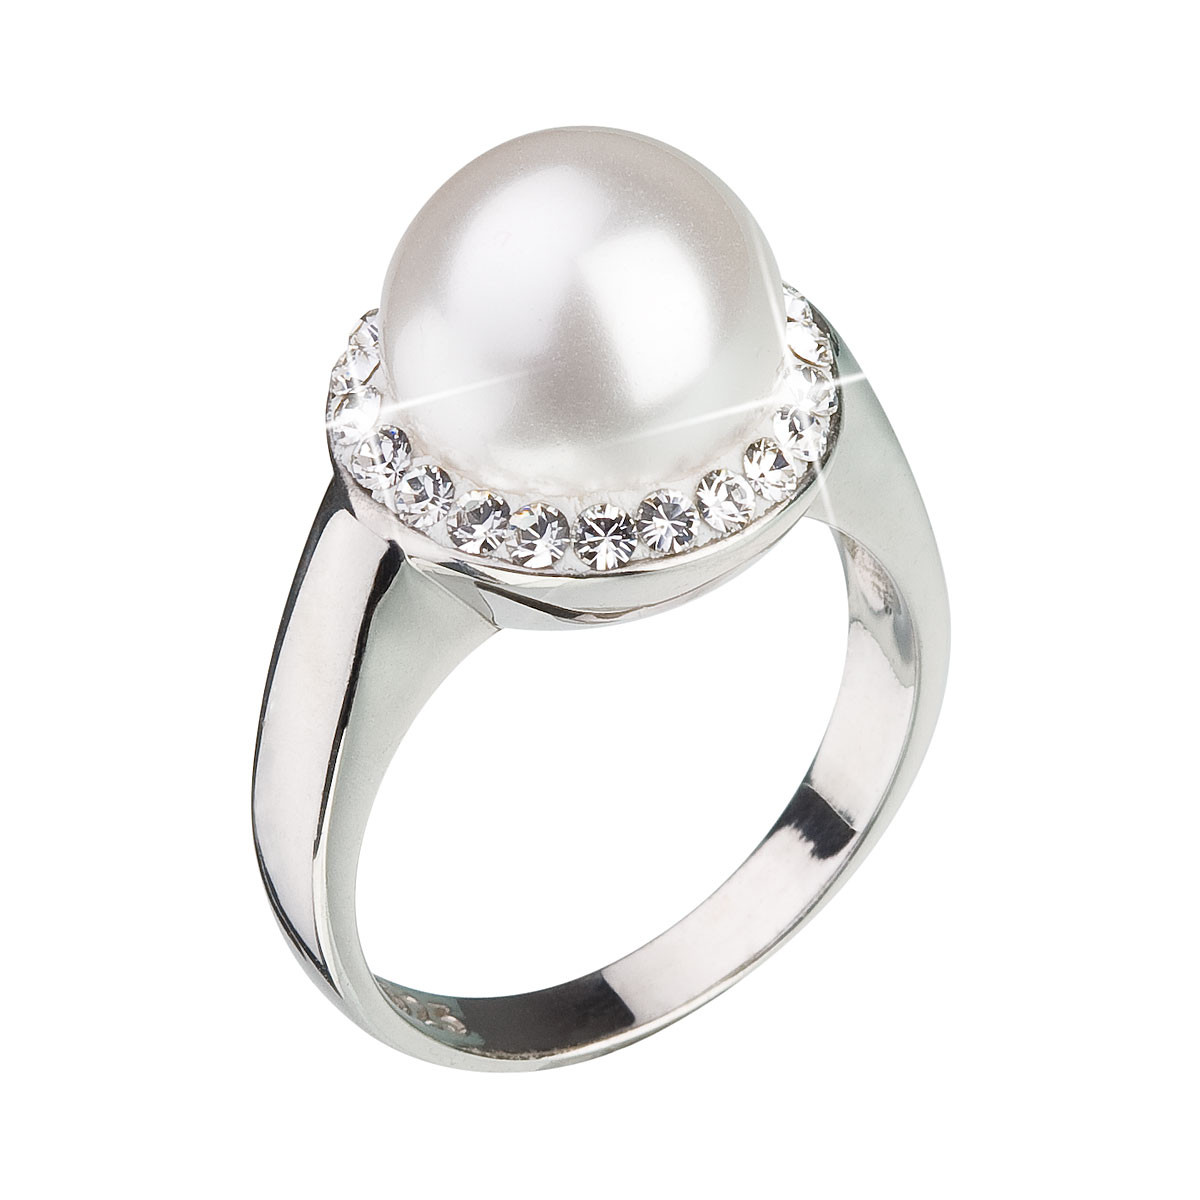 Evolution Group Stříbrný prsten s krystaly Swarovski a bílou perlou 35021.1